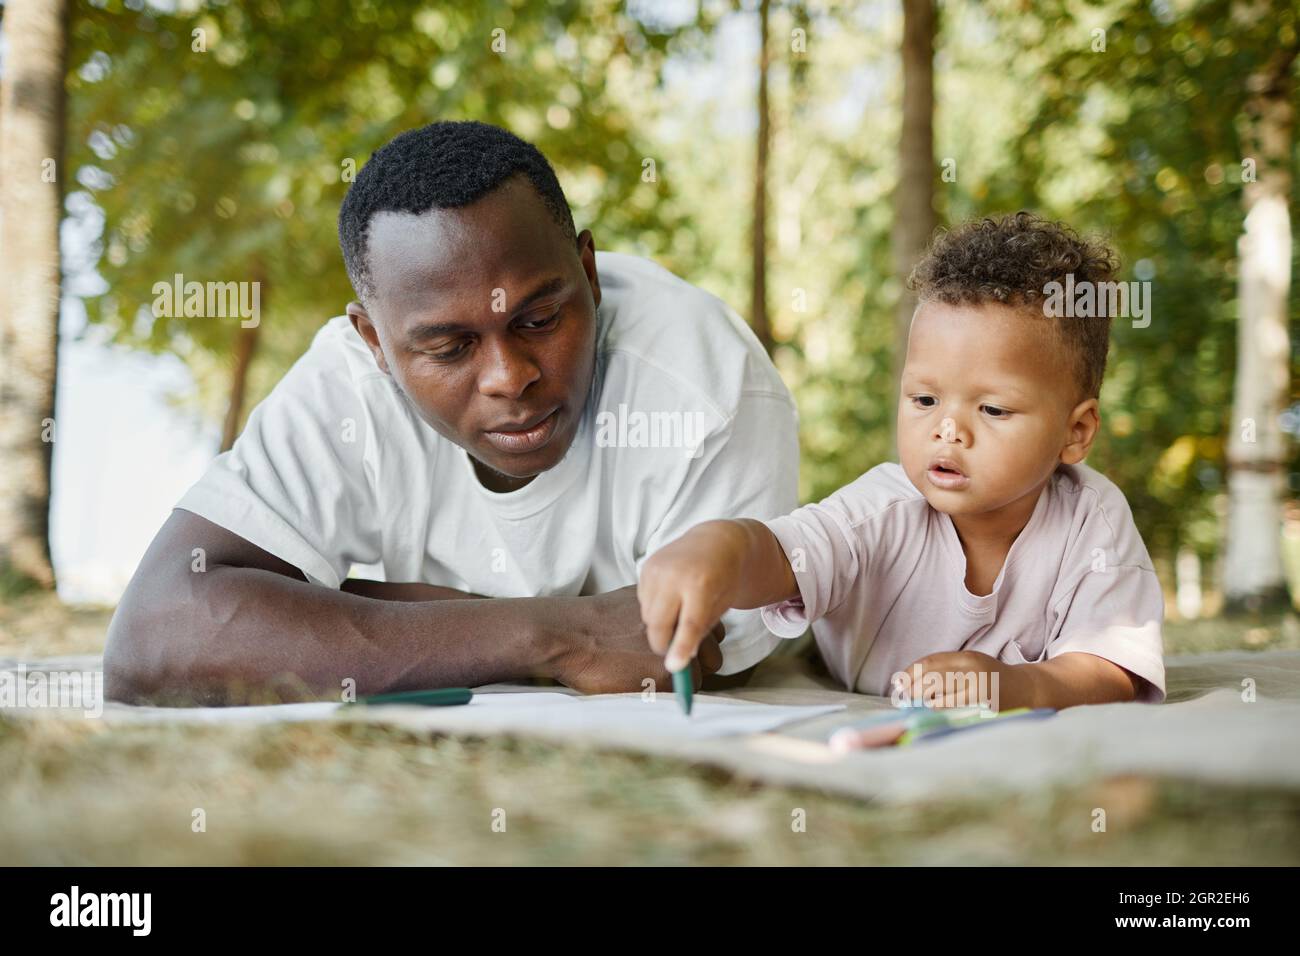 Ritratto della vista frontale del giovane padre e figlio afro-americano nel parco mentre si stendono insieme sull'erba Foto Stock